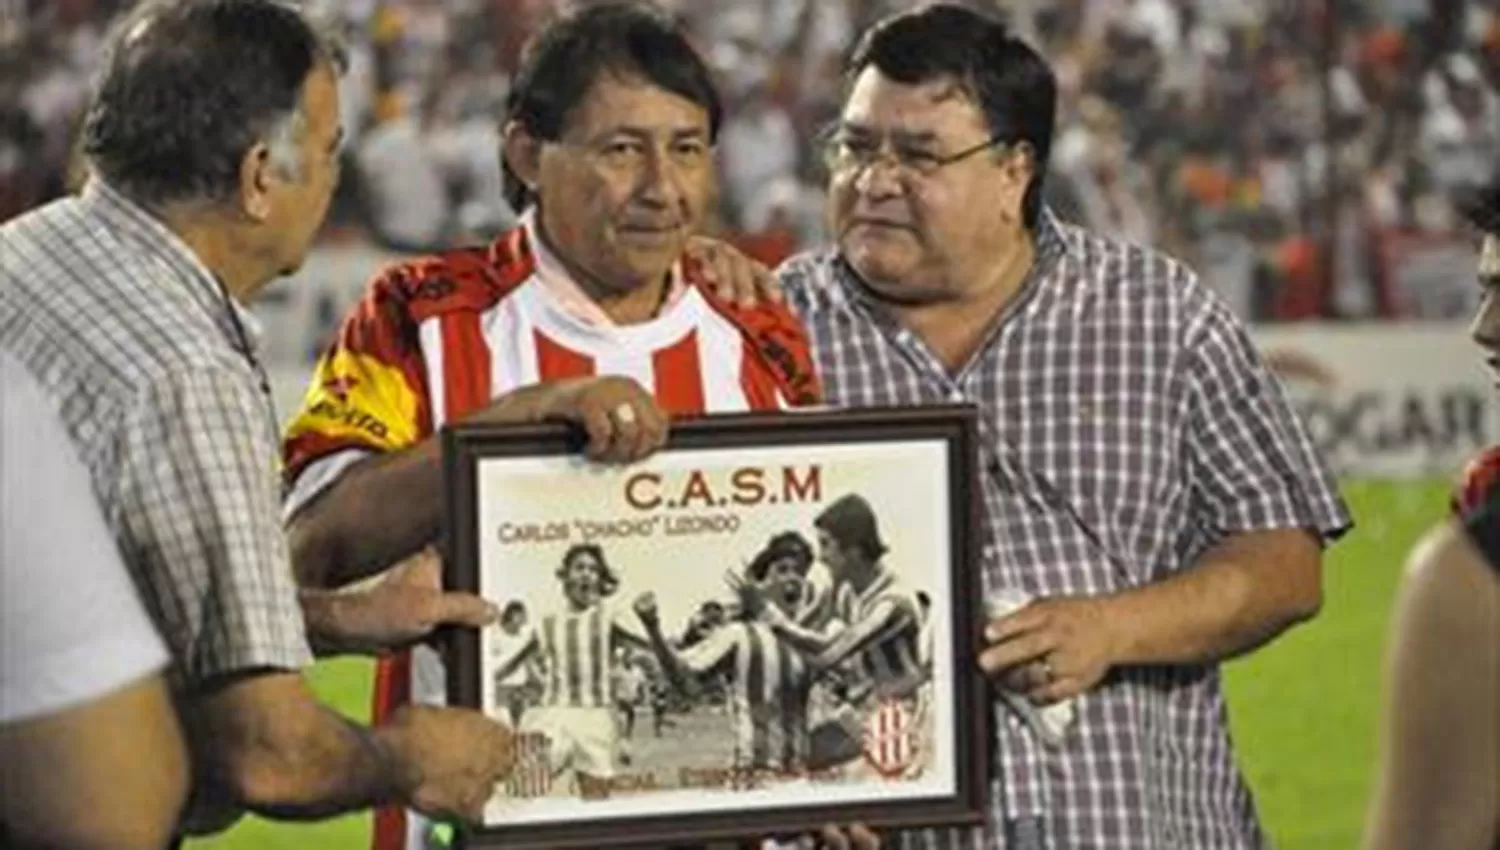 El año pasado, la directiva de San Martín homenajeó a Chacho Lizondo.
FOTO GENTILEZA DE CARLOS SÁNCHEZ.